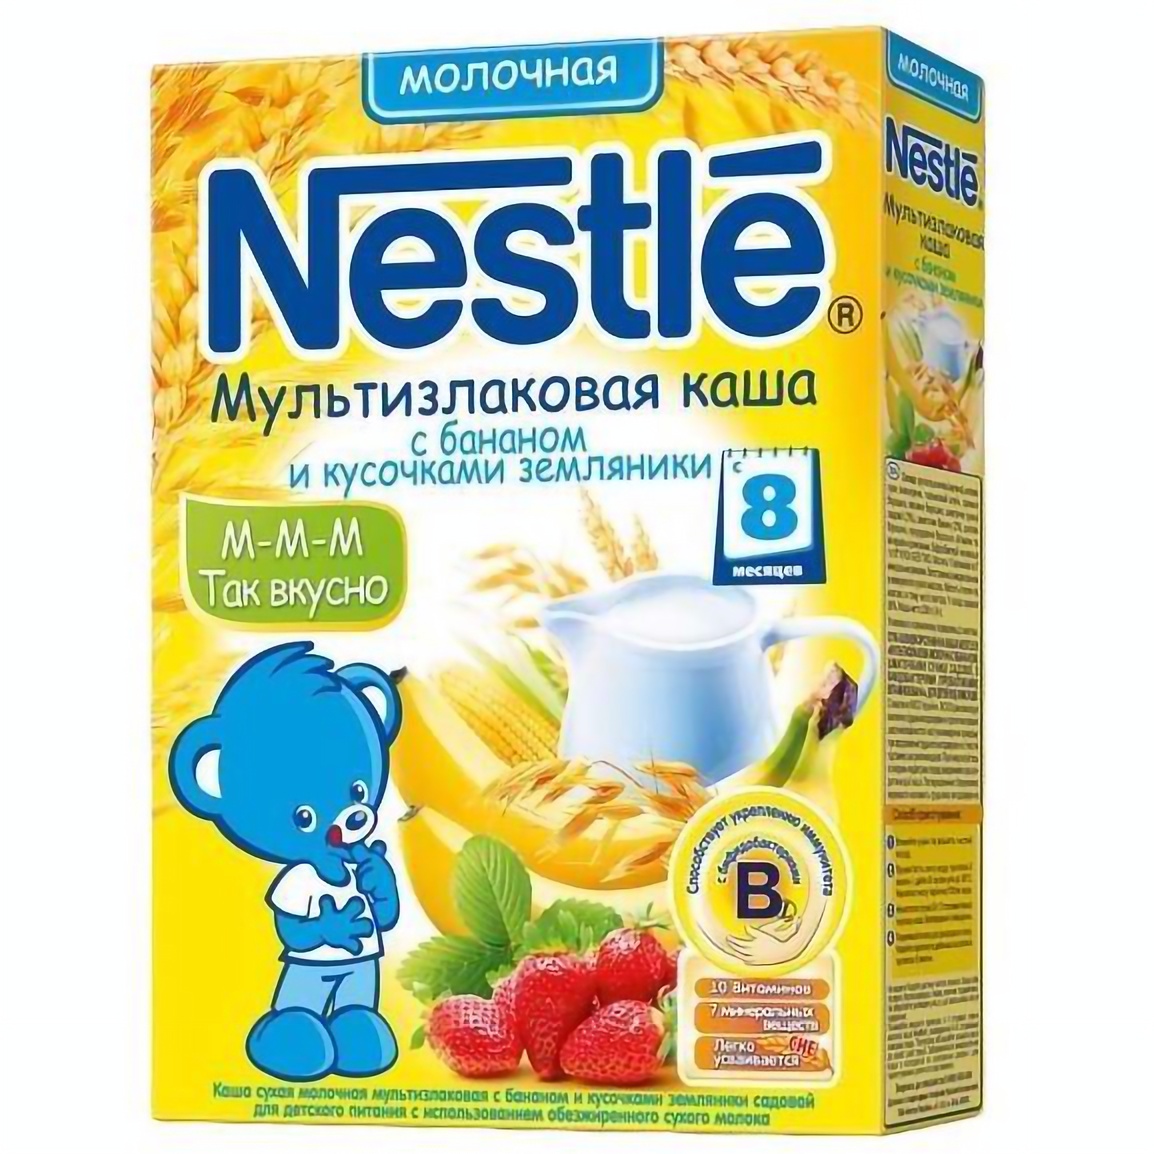 Молочная каша Nestle Мультизлаковая с бананом и кусочками земляники 250 г - фото 1